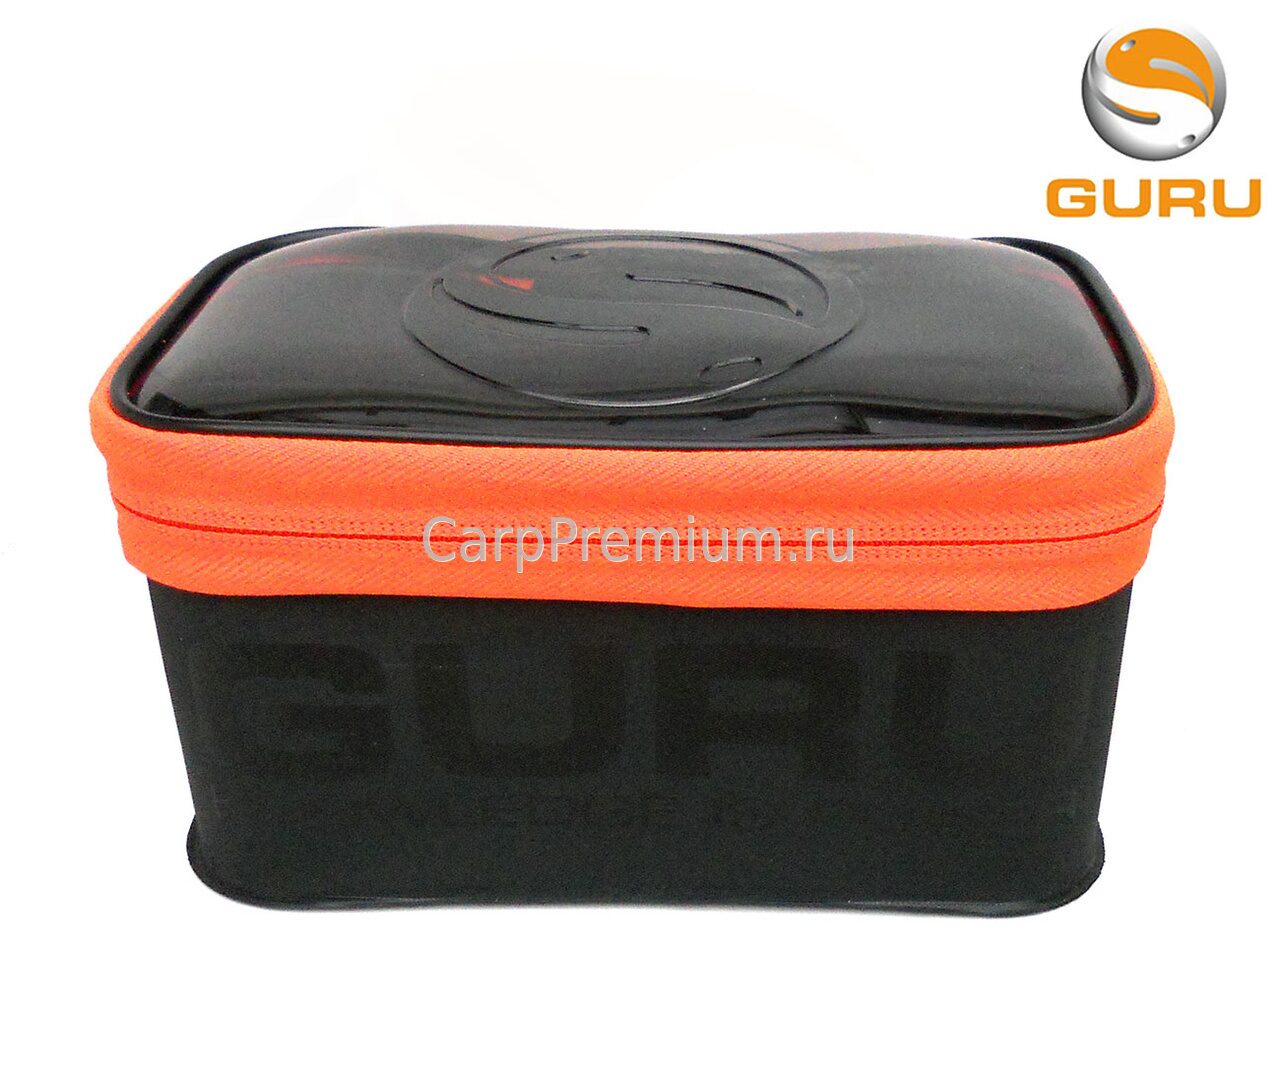 Коробка Guru (Гуру) - Fusion 210 Extra small, Размер Очень Малый